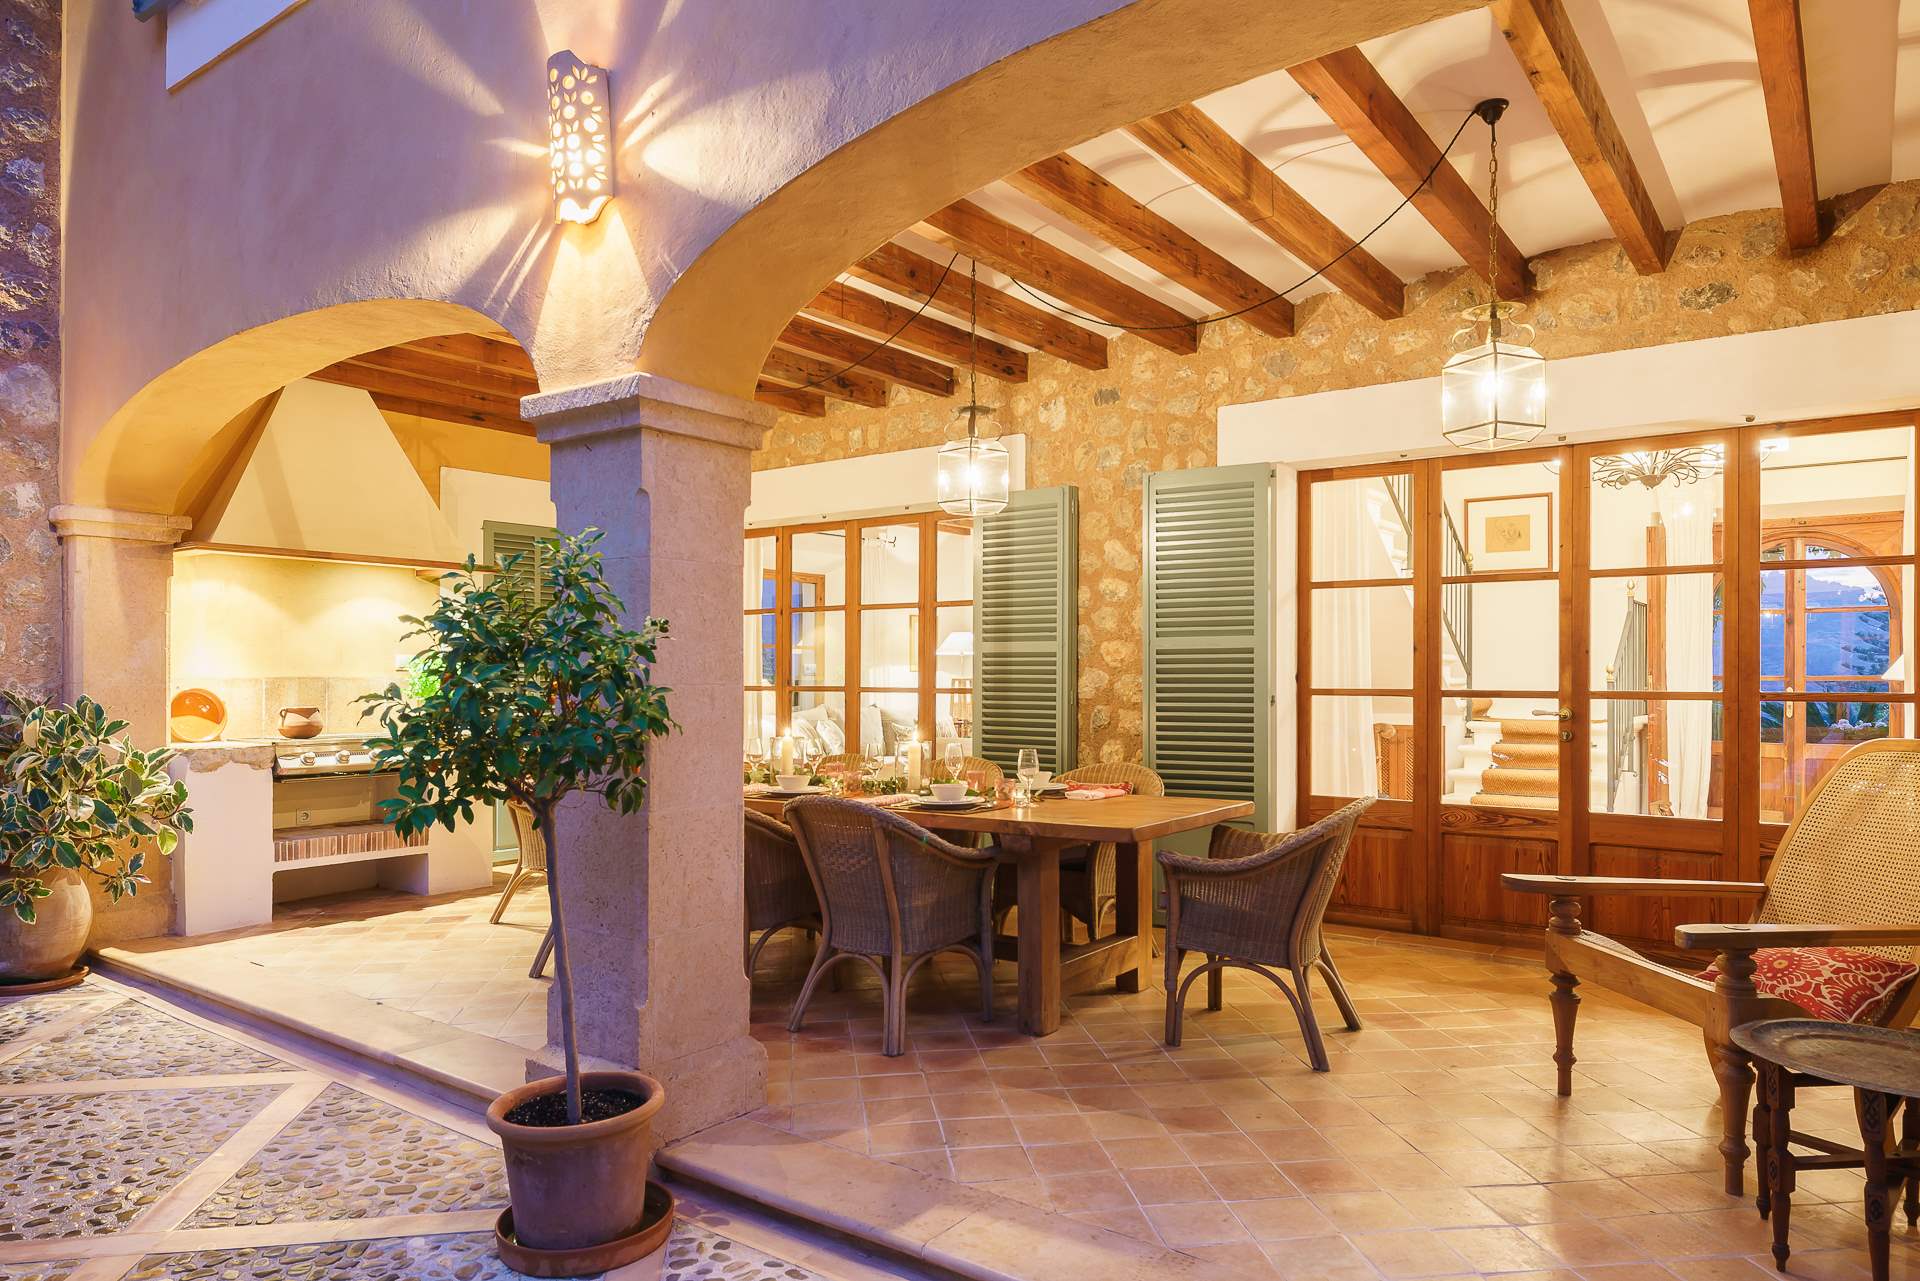 Sa Tanca, 3 Bedroom Rental, 3 bedroom villa in Soller & Deia, Majorca Photo #12